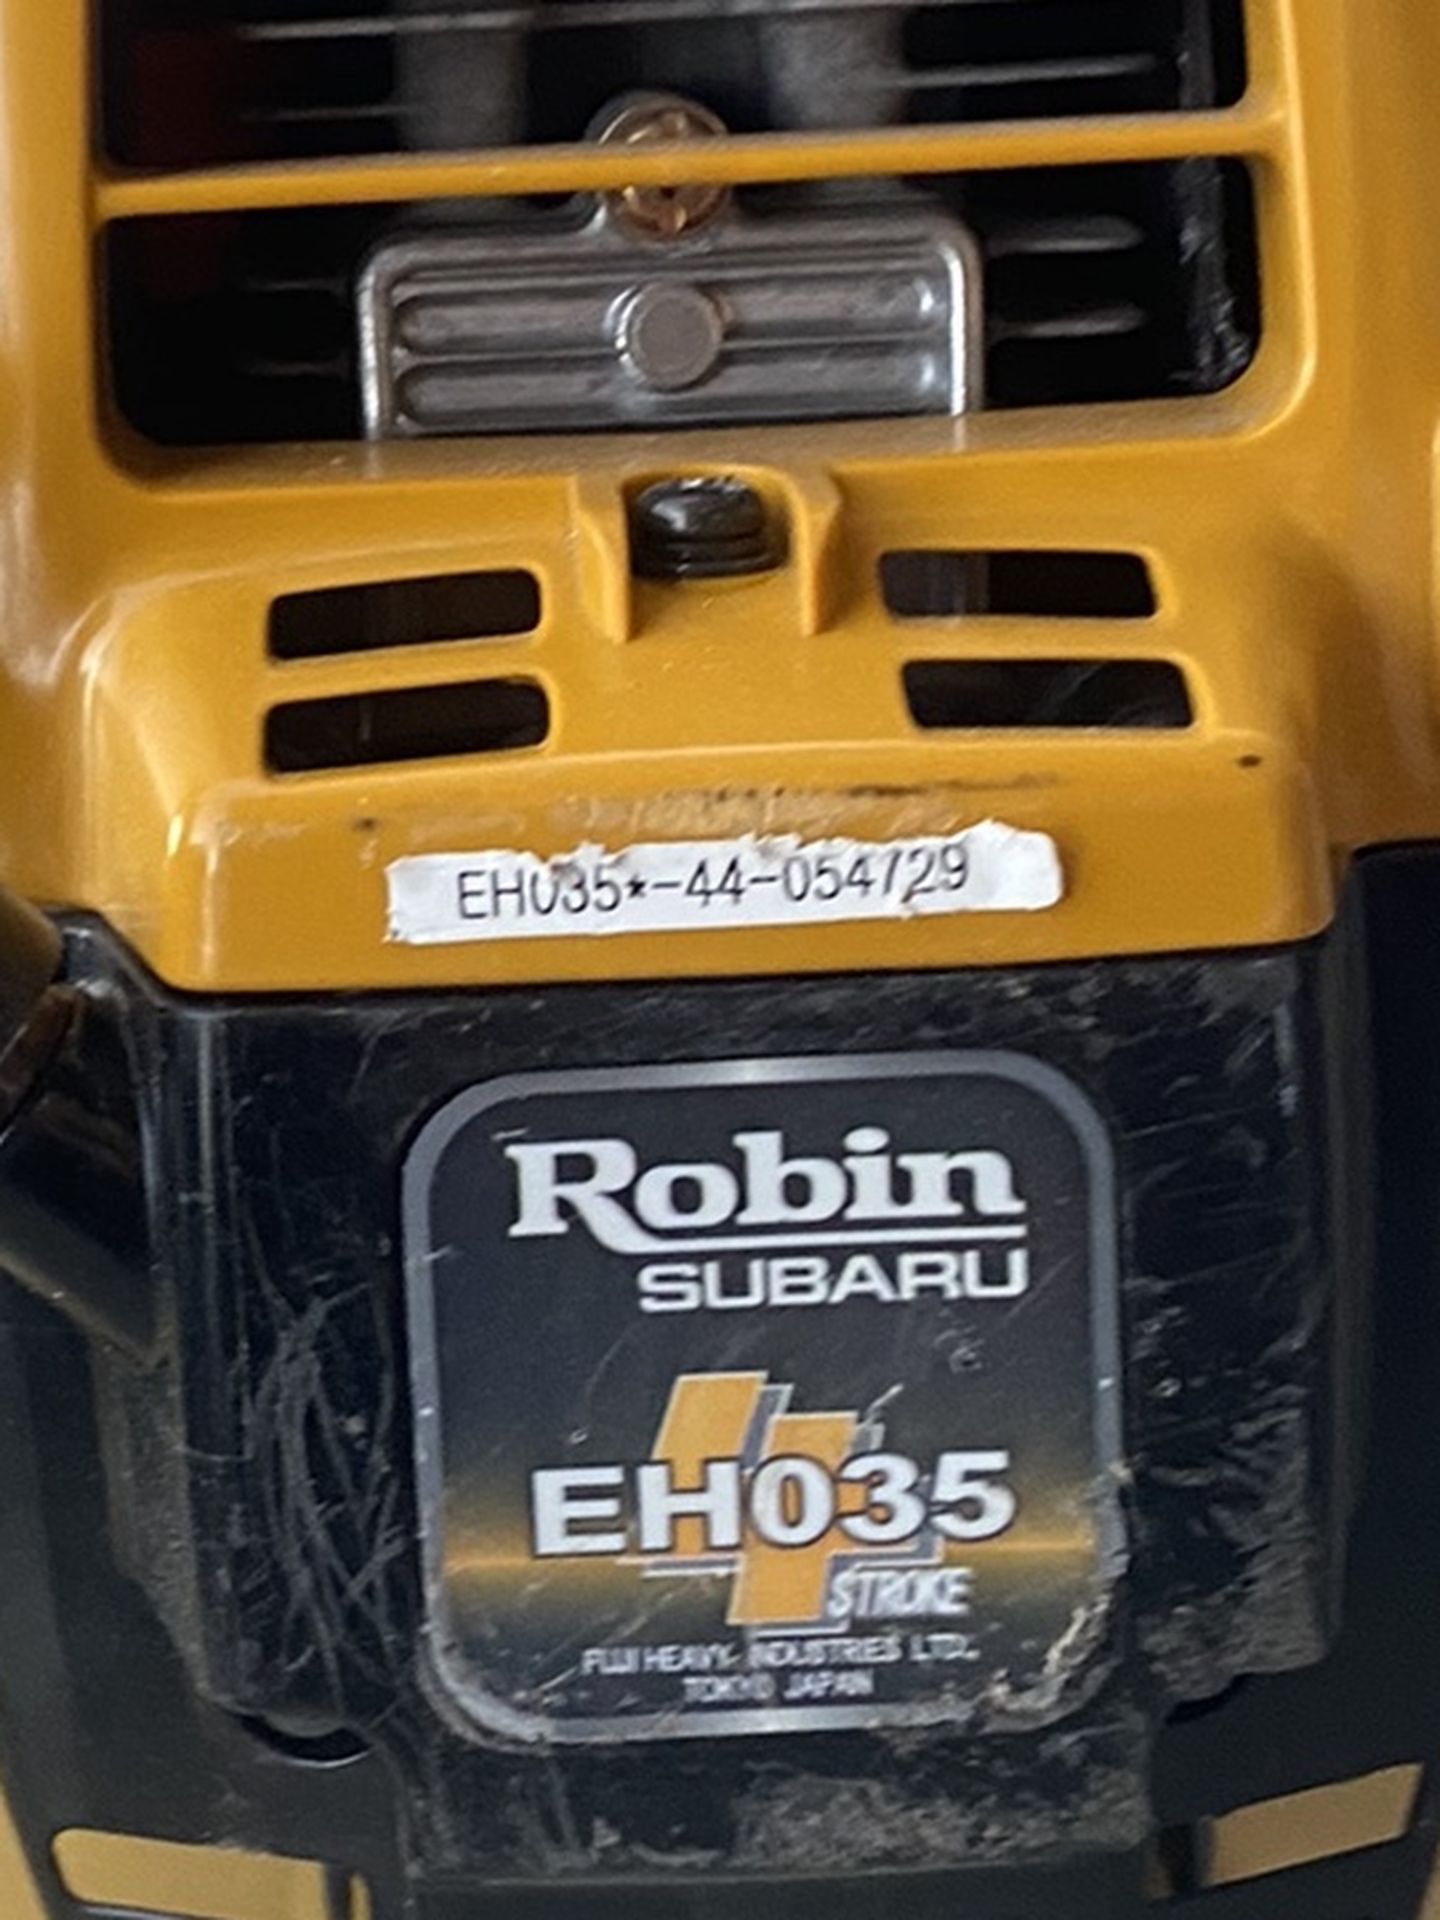 Robin Subaru EH035 2 Stroke